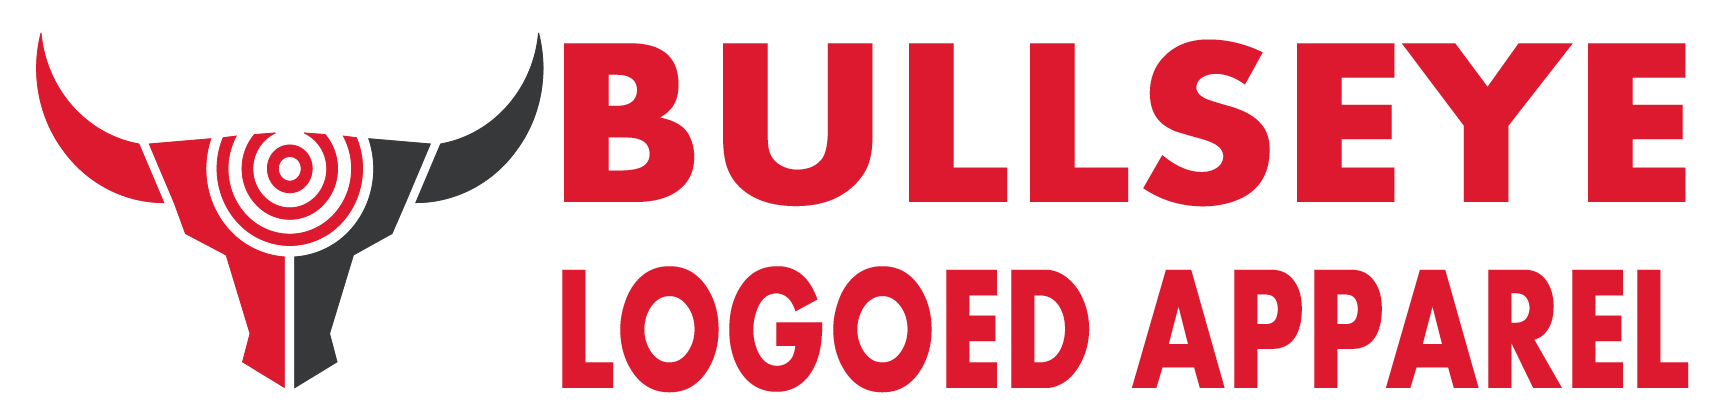 Bullseye Apparel logo